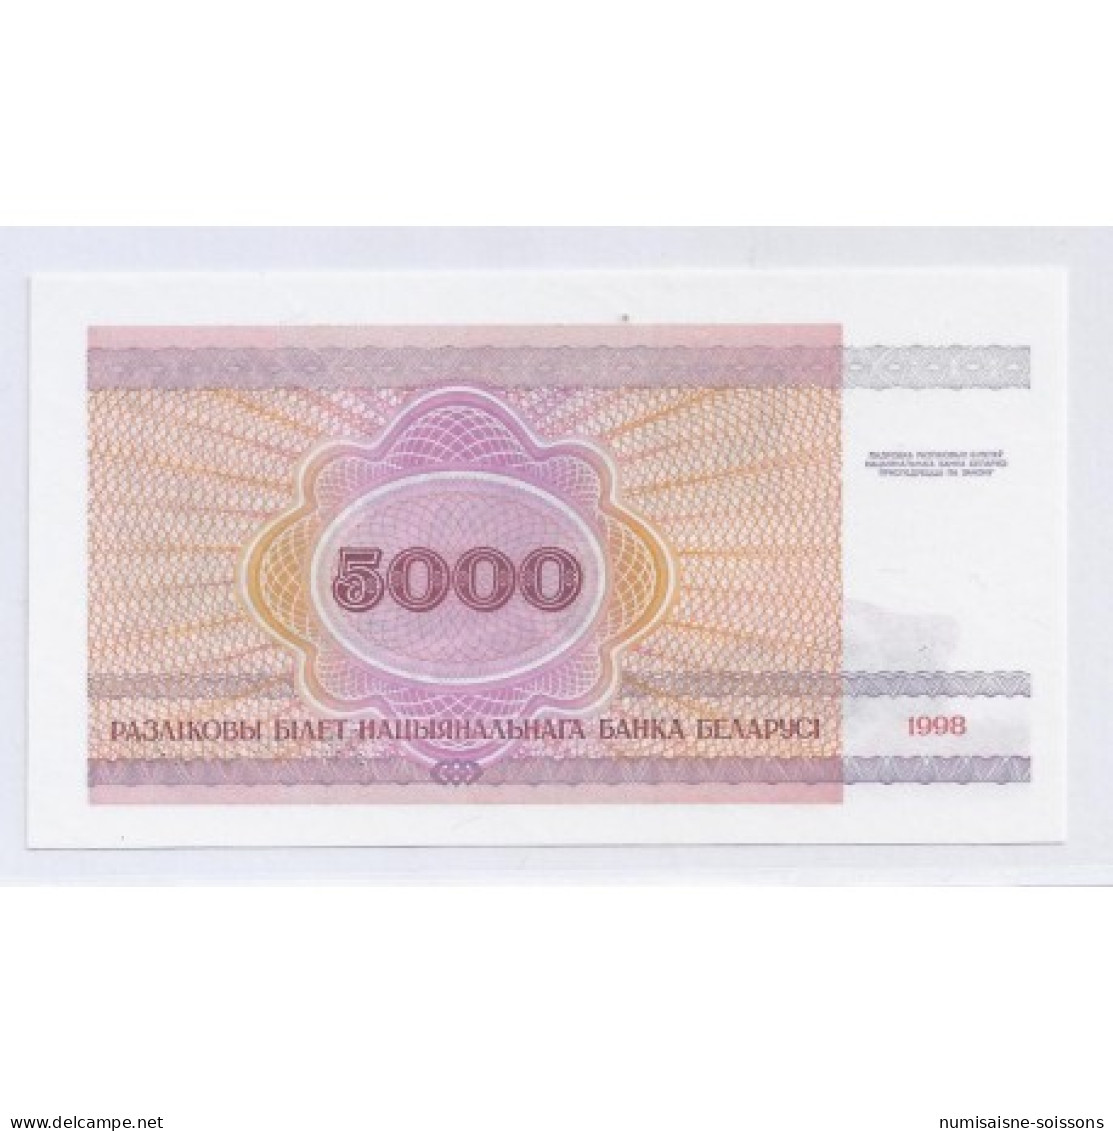 BIELORUSSIE - PICK 17 - 5000 RUBLEI - 1998 - NEUF - Bielorussia